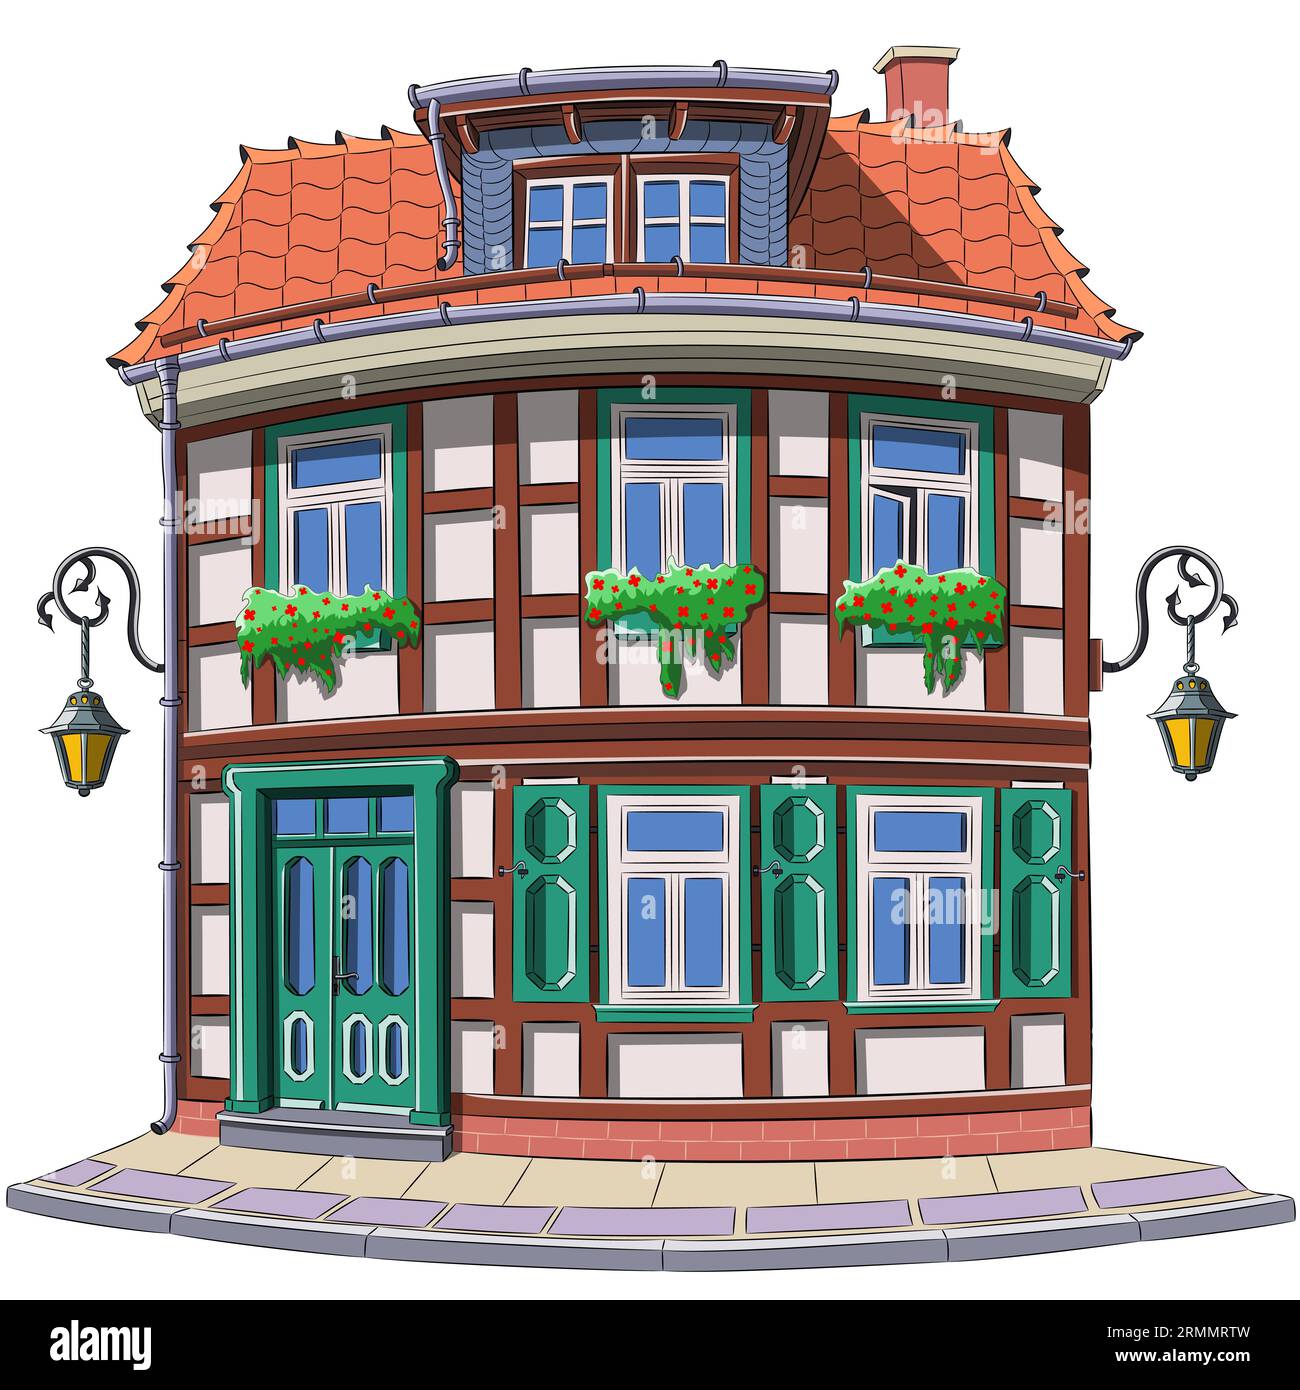 Zeichnung eines alten deutschen Fachwerkhauses mit Ziegeldach und Blumen an den Fenstern in Wernigerode. Deutschland. Vektorillustration. Stock Vektor